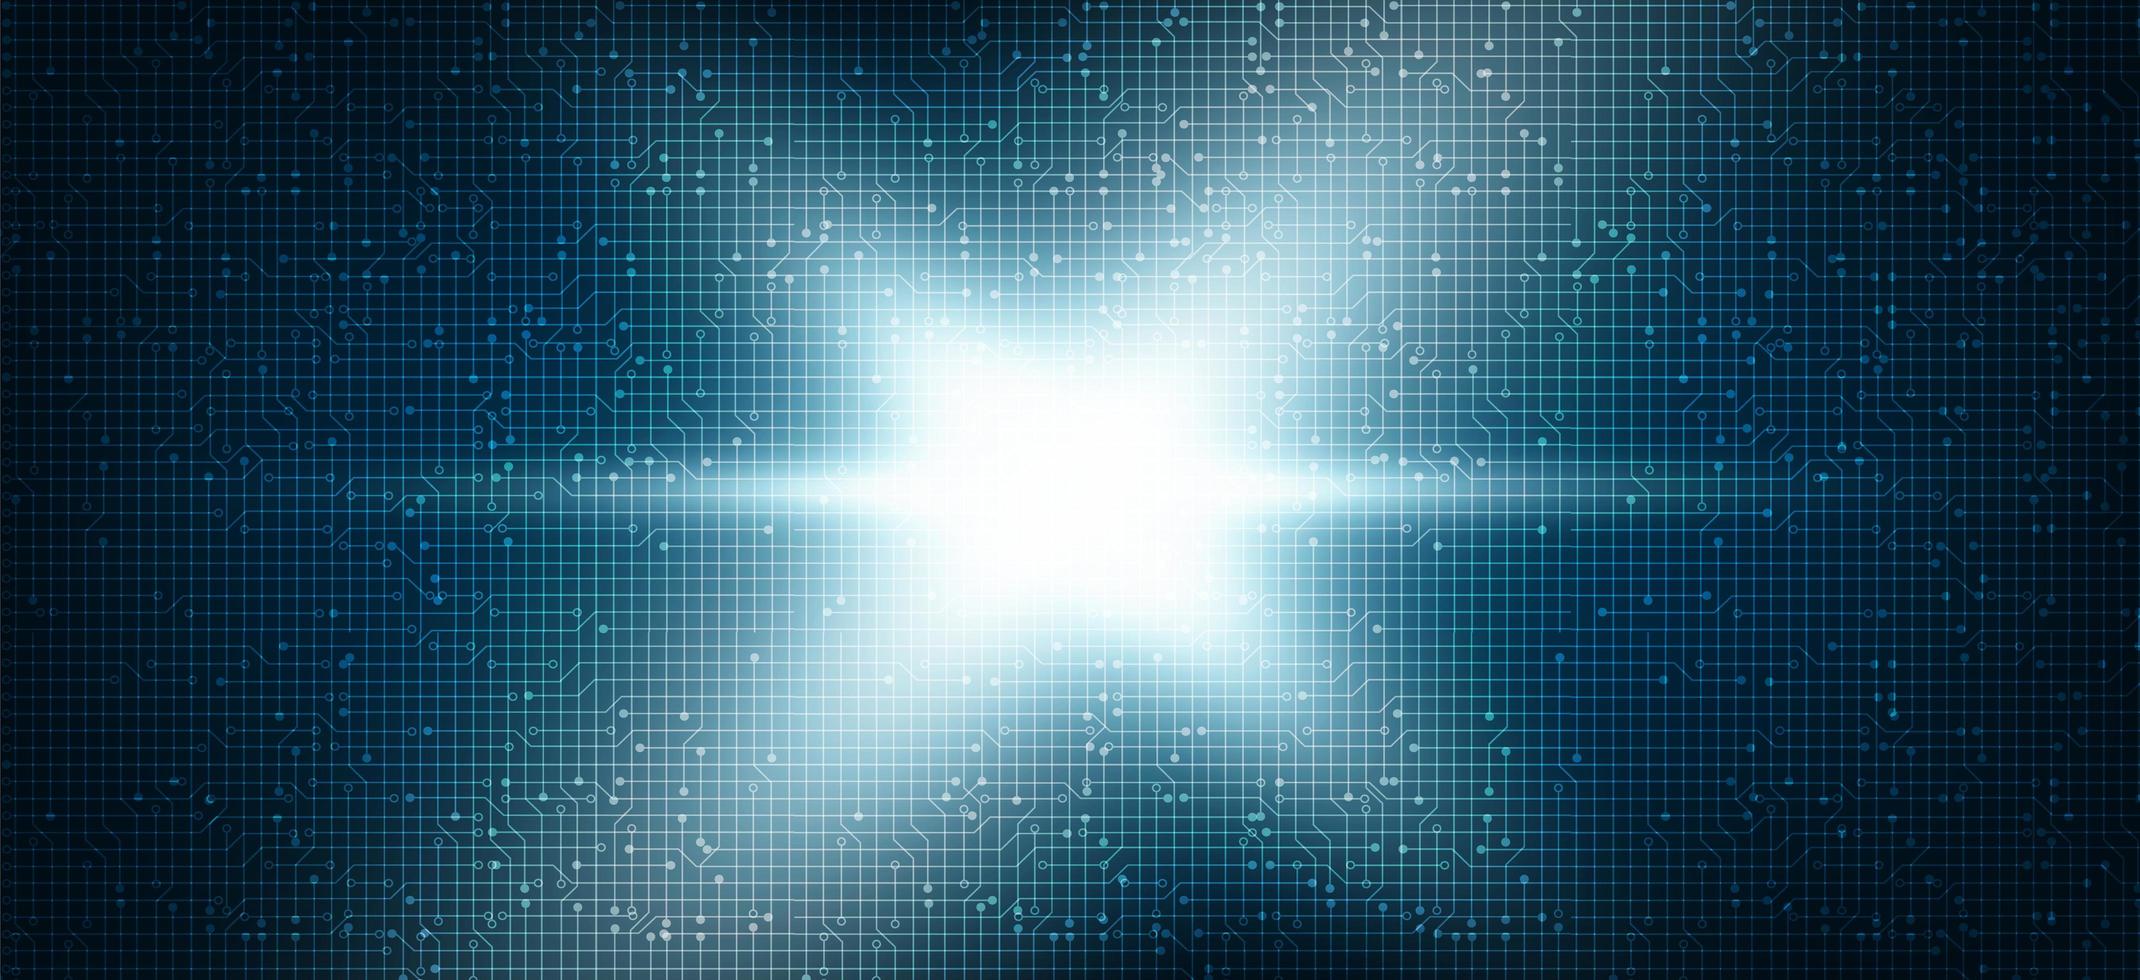 stjärna ljus krets mikrochip teknik på blå framtida bakgrund, högteknologiska digitala och nätverk konceptdesign, ledigt utrymme för textinmatning vektor